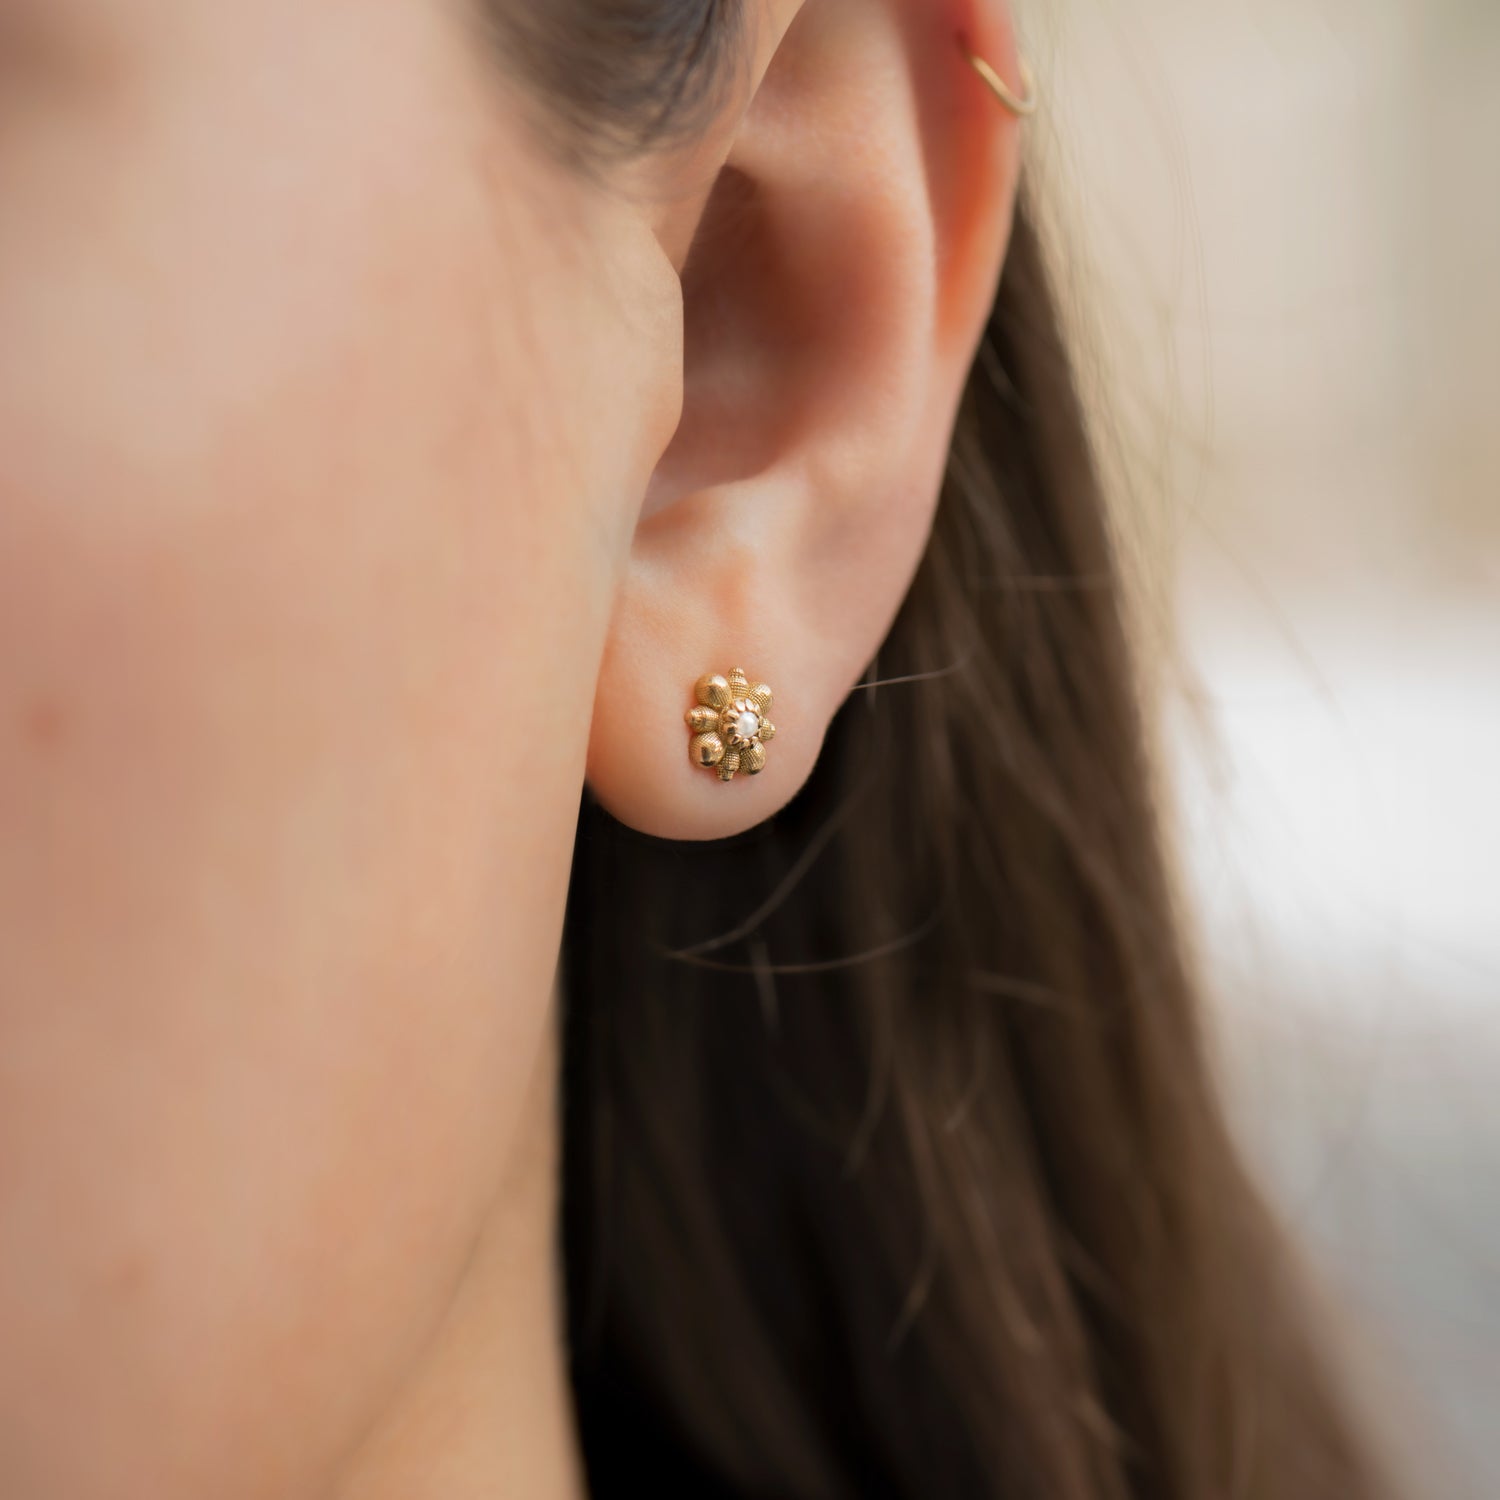 Gemstone Flower Earrings, 14K Gold Studs, Two of Most Jewelry